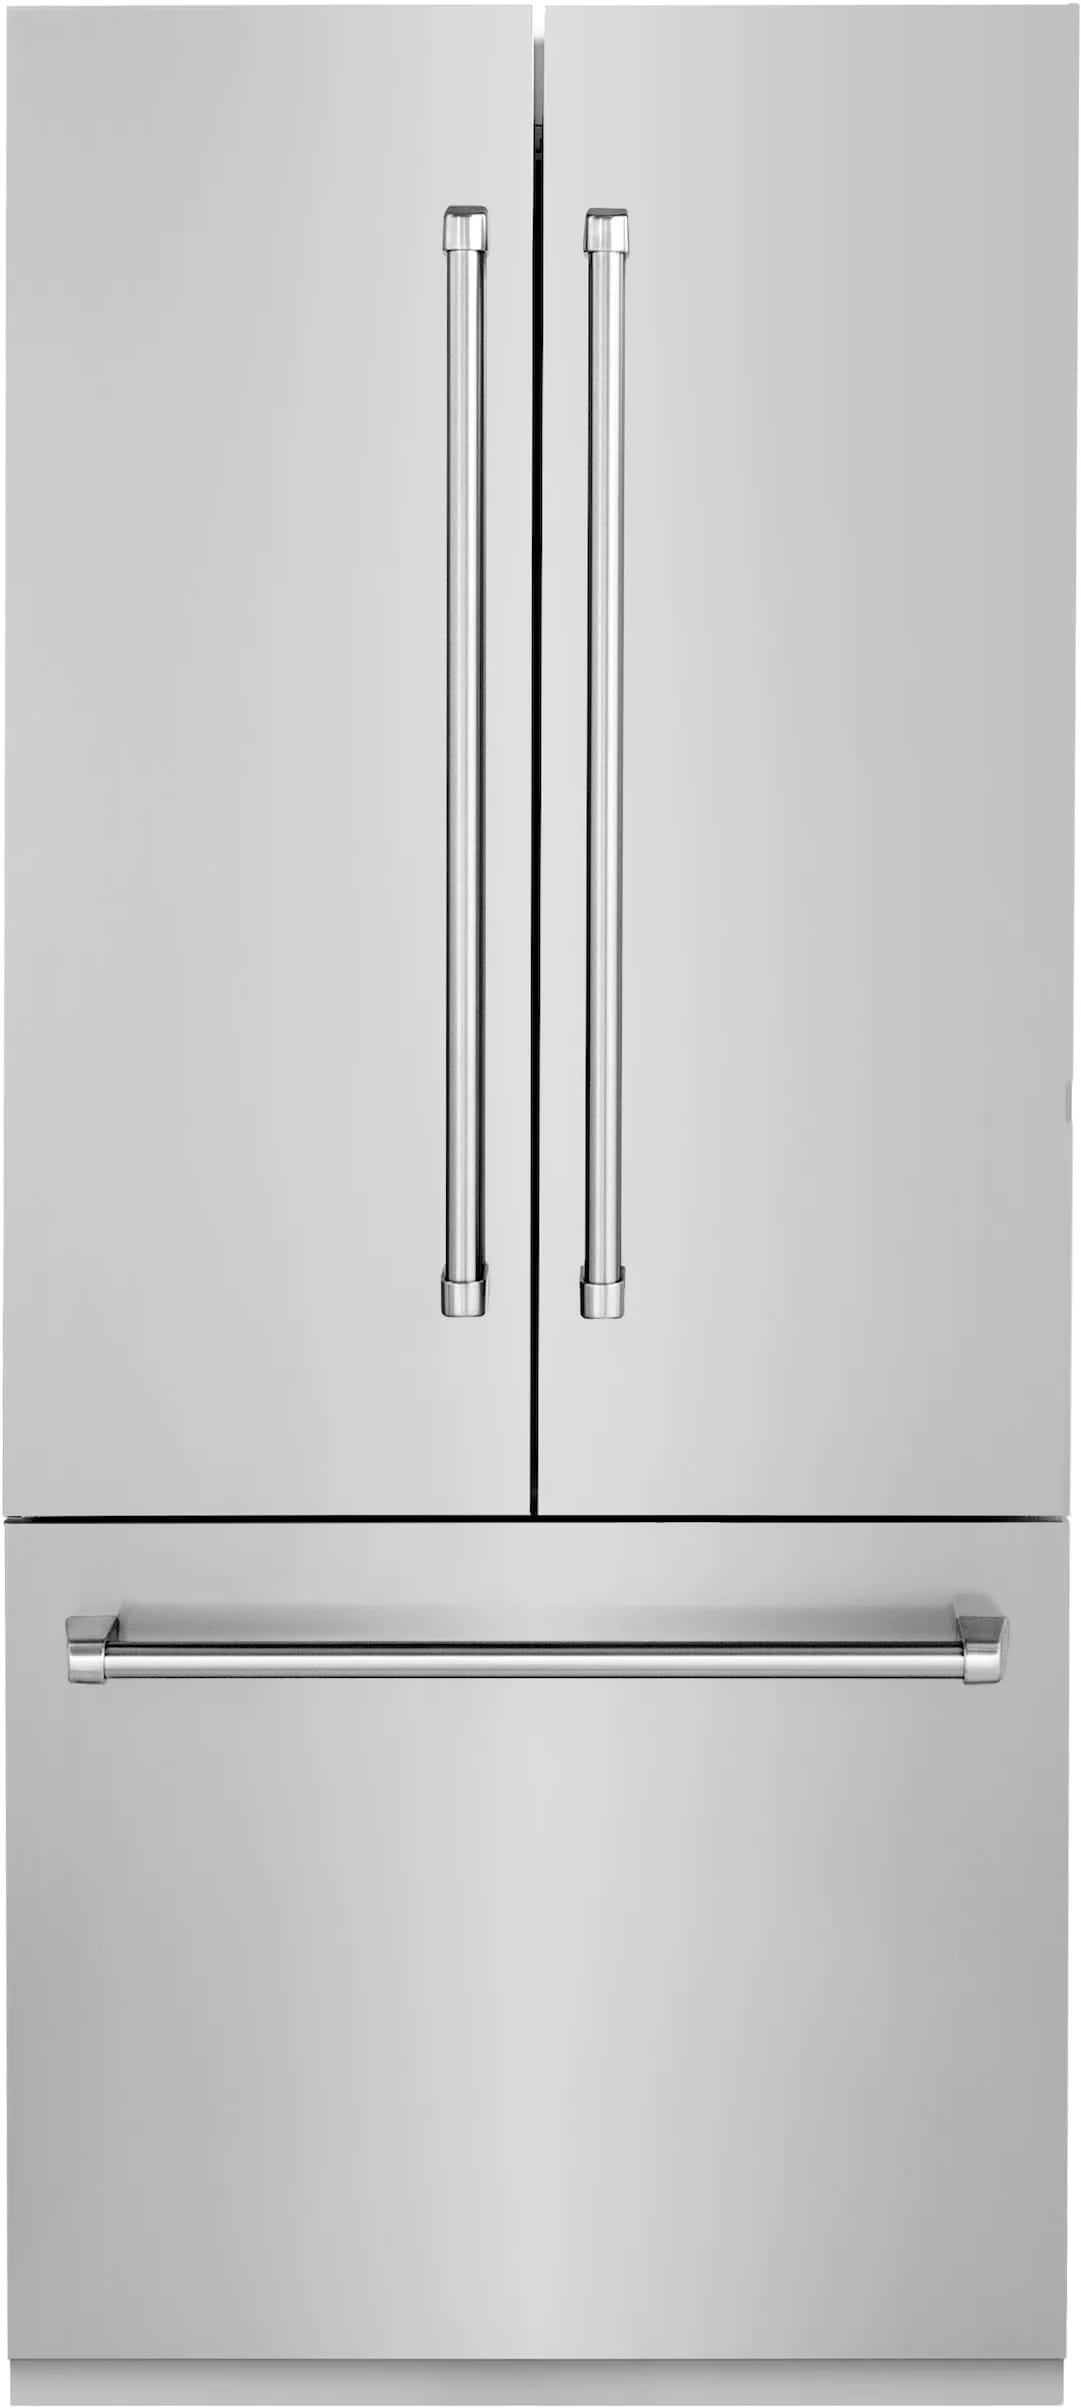 36 Inch Counter Depth Built-In French Door Refrigerator